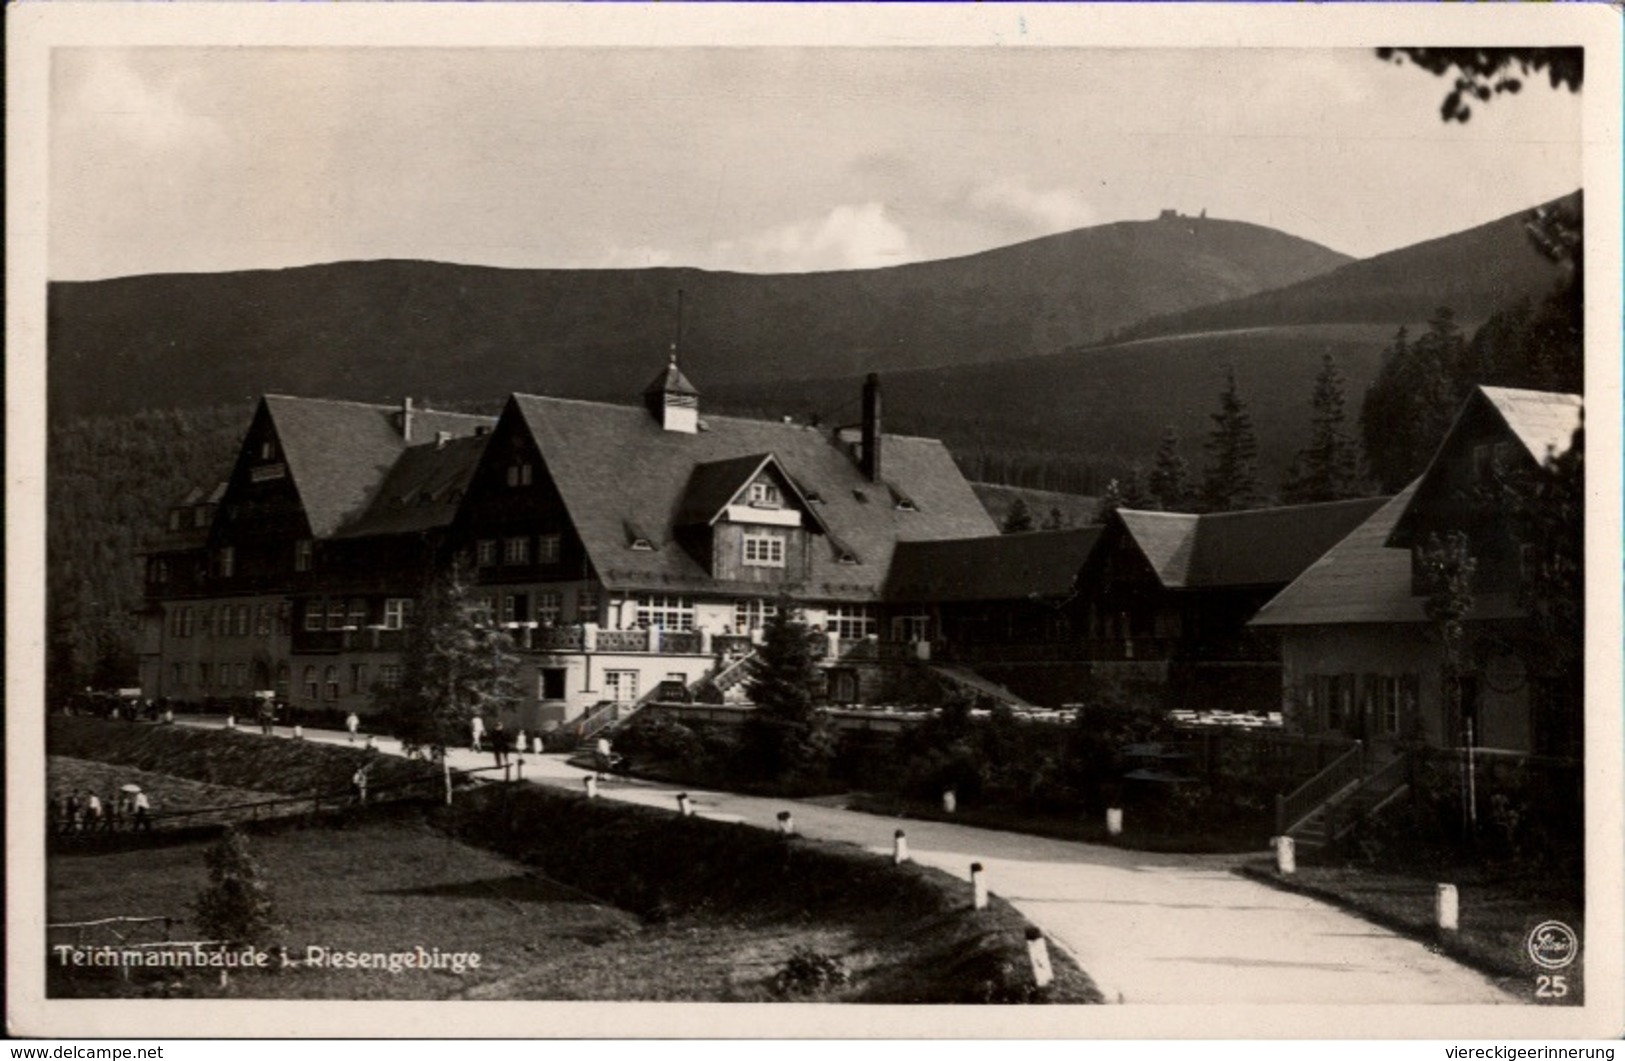 ! Alte Fotokarte, Riesengebirge, Krummhübel, Teichmannbaude, Karpacz, Niederschlesien, 1932 - Schlesien